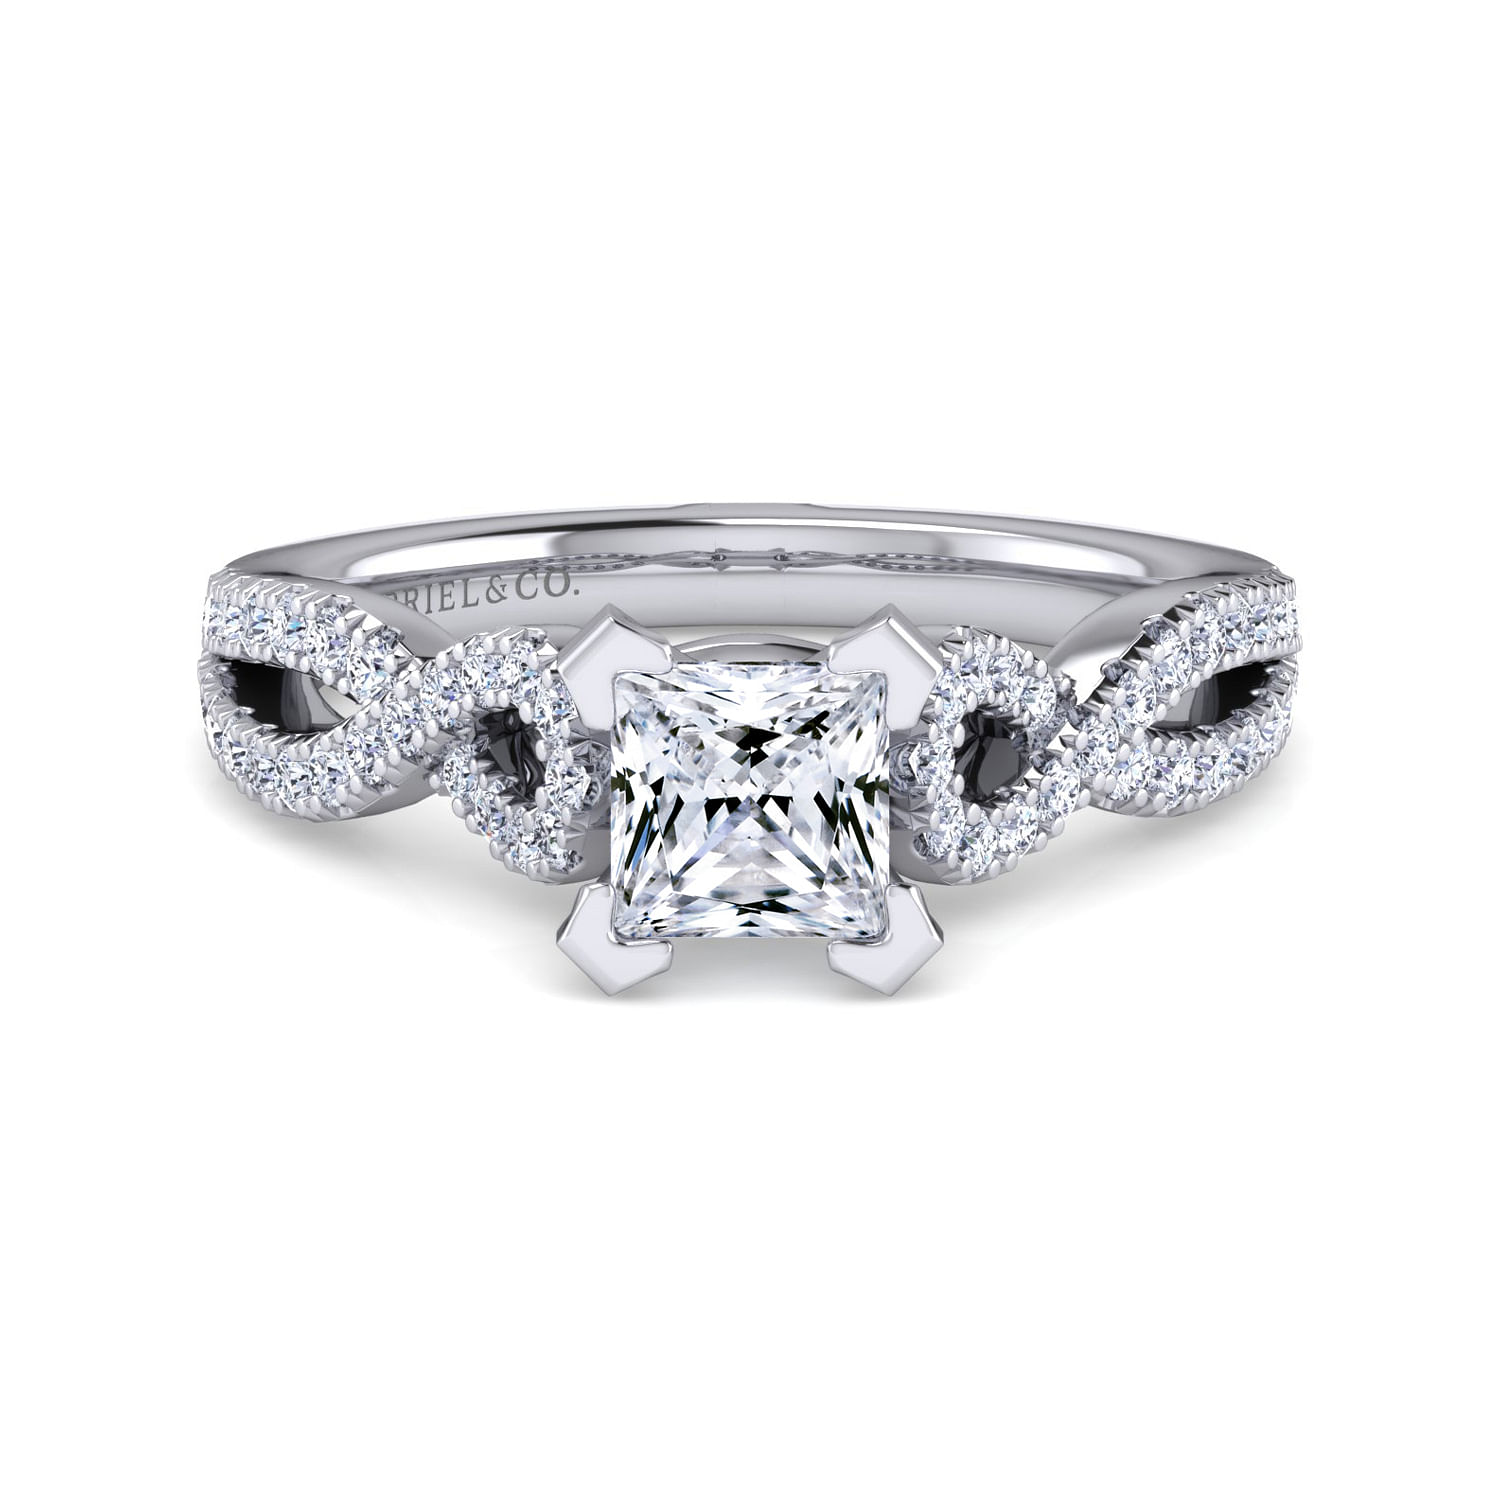 Kayla - 14K White Gold Twisted Princess Cut Diamond Engagement Ring